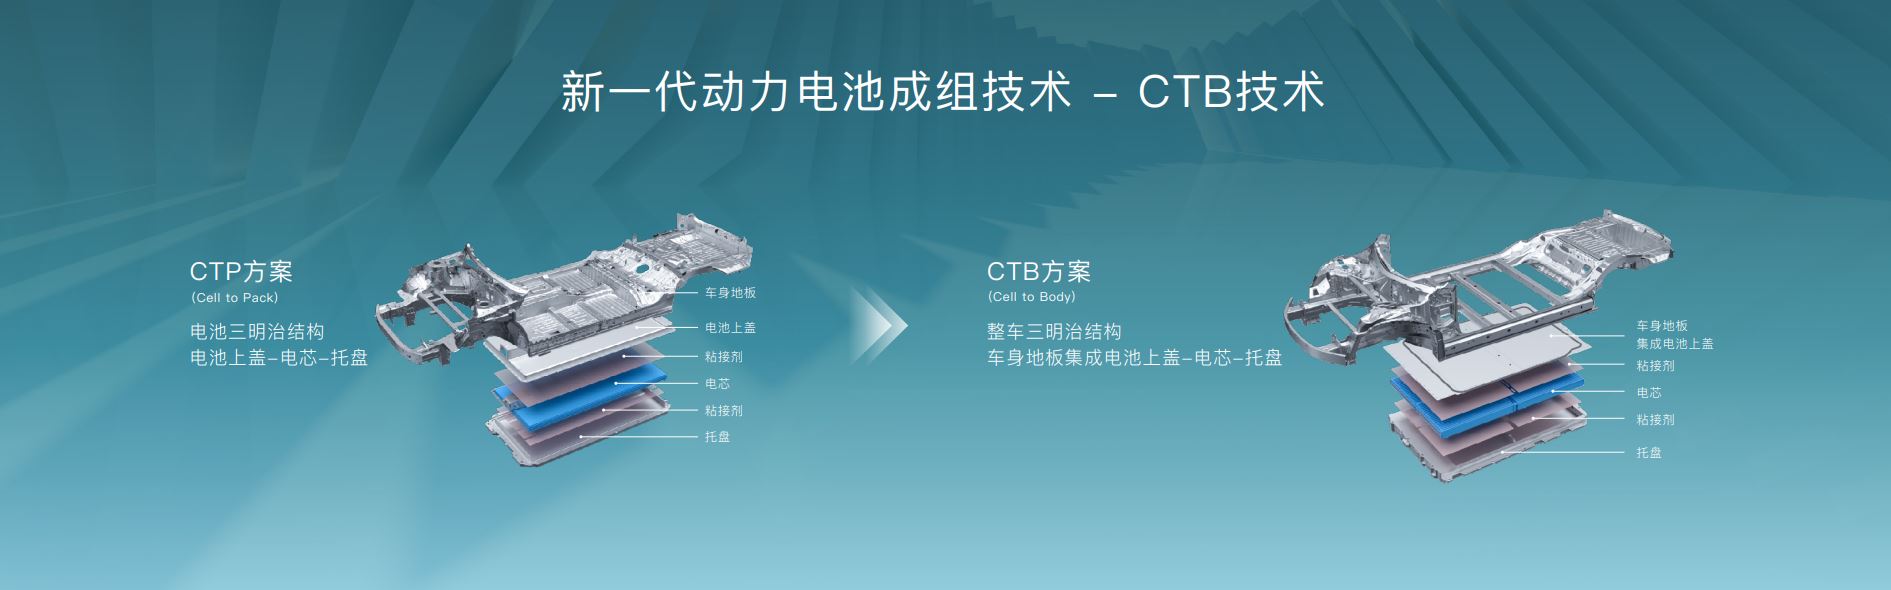 首搭于海豹车型！比亚迪发布CTB技术 电池系统体积利用率提升至66%